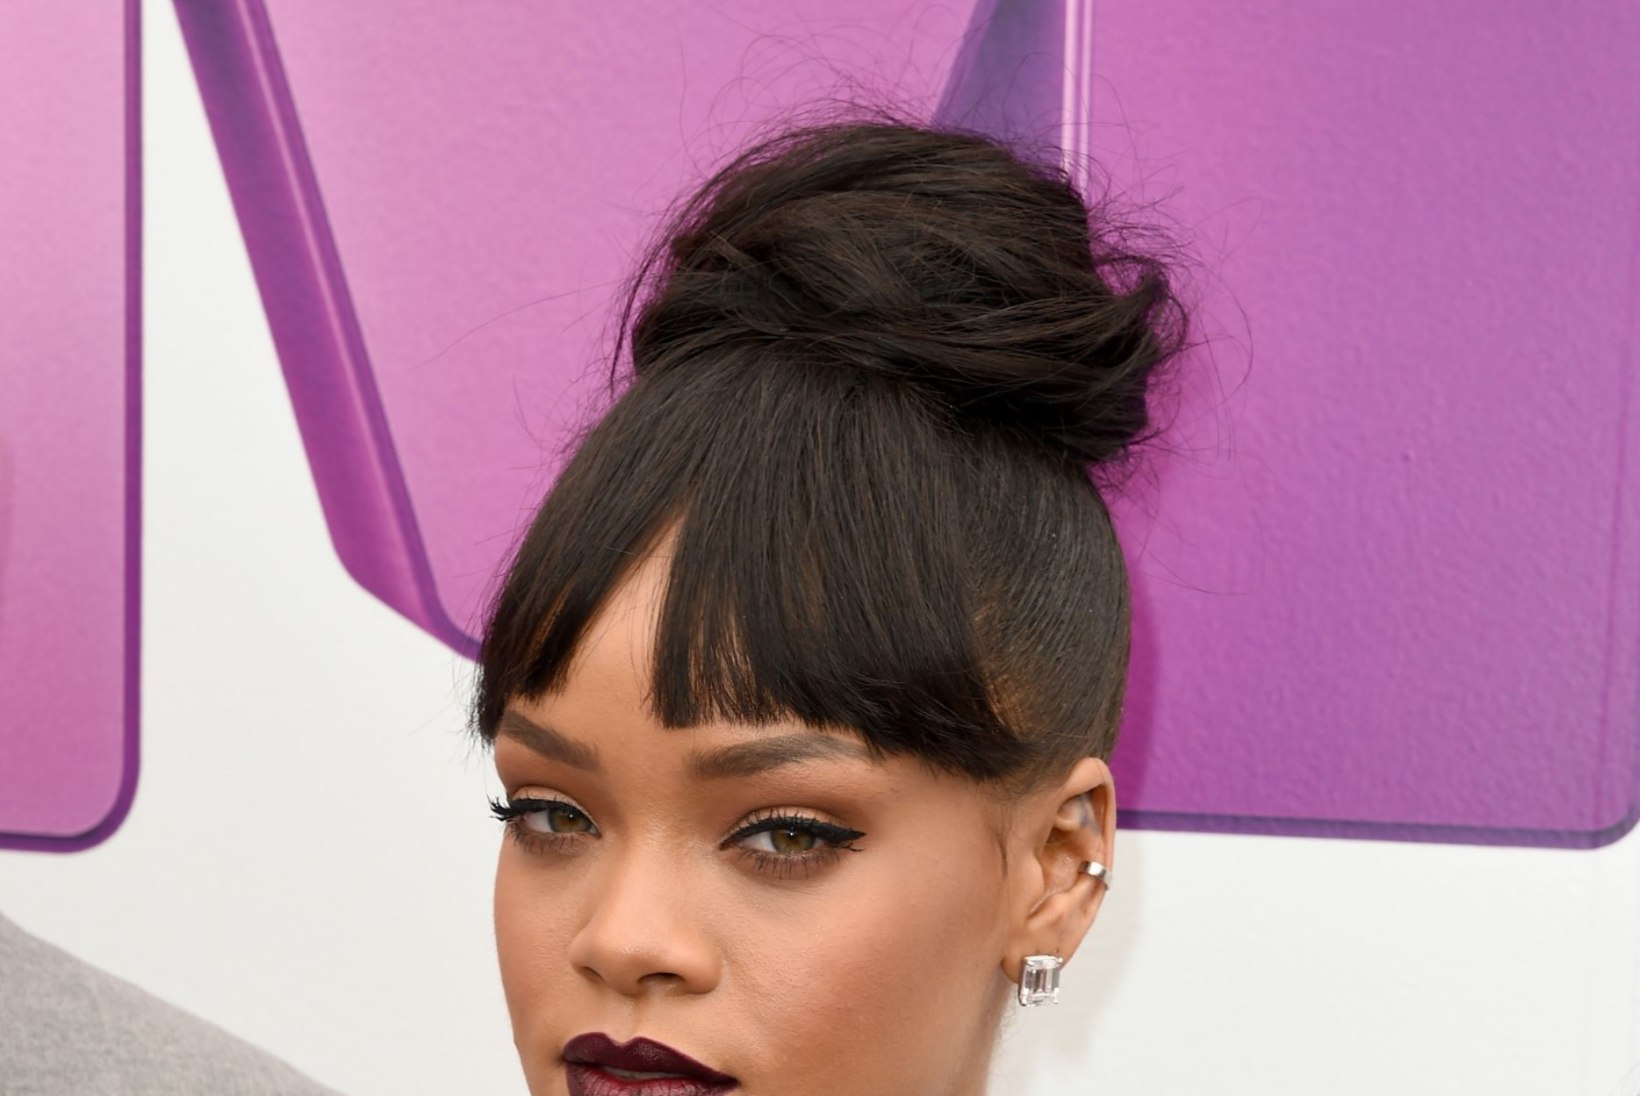 Rihannal pole semmimiseks aega